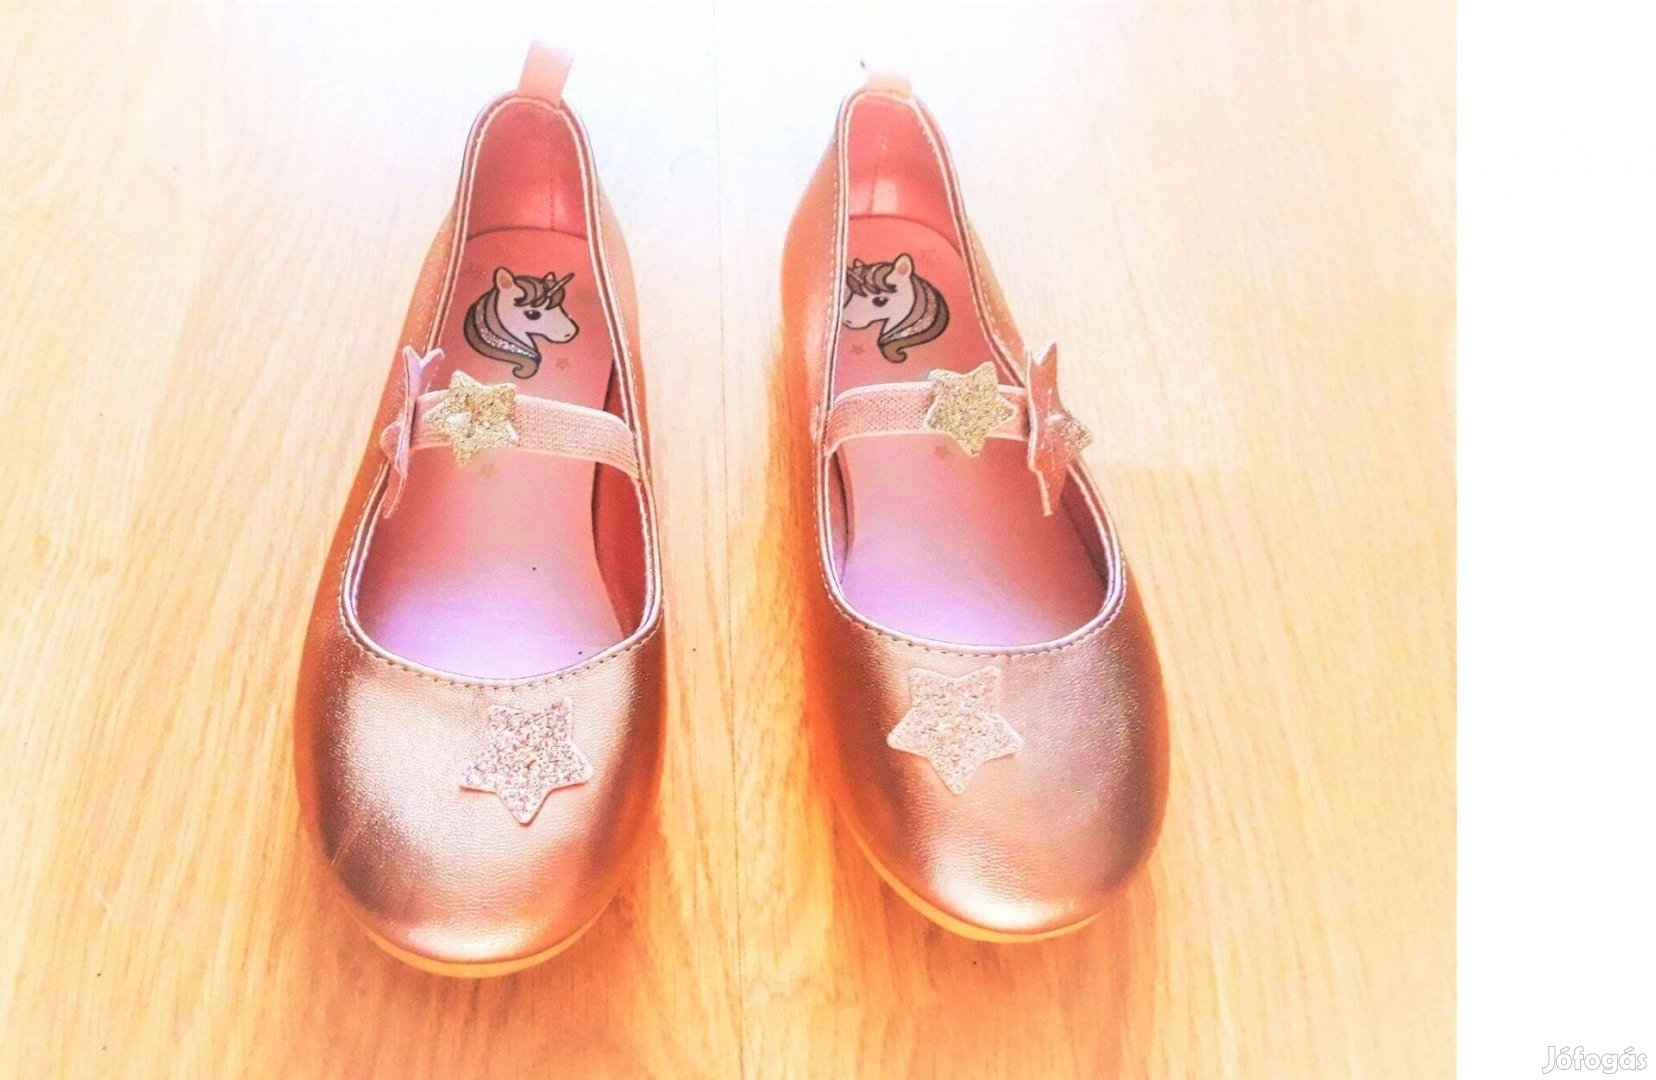 28 bth18 1kéz újszerű H&M póni 3D arany csillagos balerina cipő